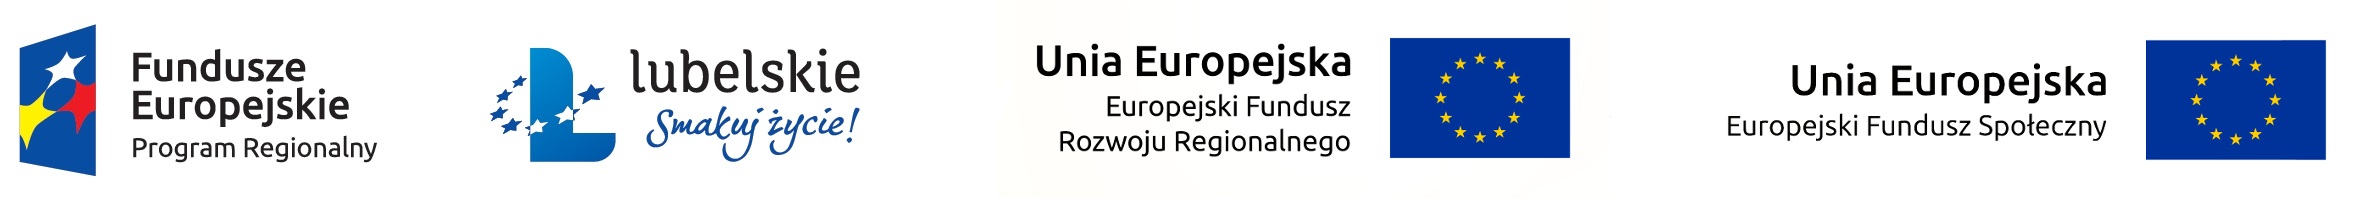 Logotypy: Fundusze Europejskie, Lubelskie Smakuj Życie, Unia Europejska Europejski Fundusz Rozwoju Regionalnego, Unia Europejska Europejski Fundusz Społeczny